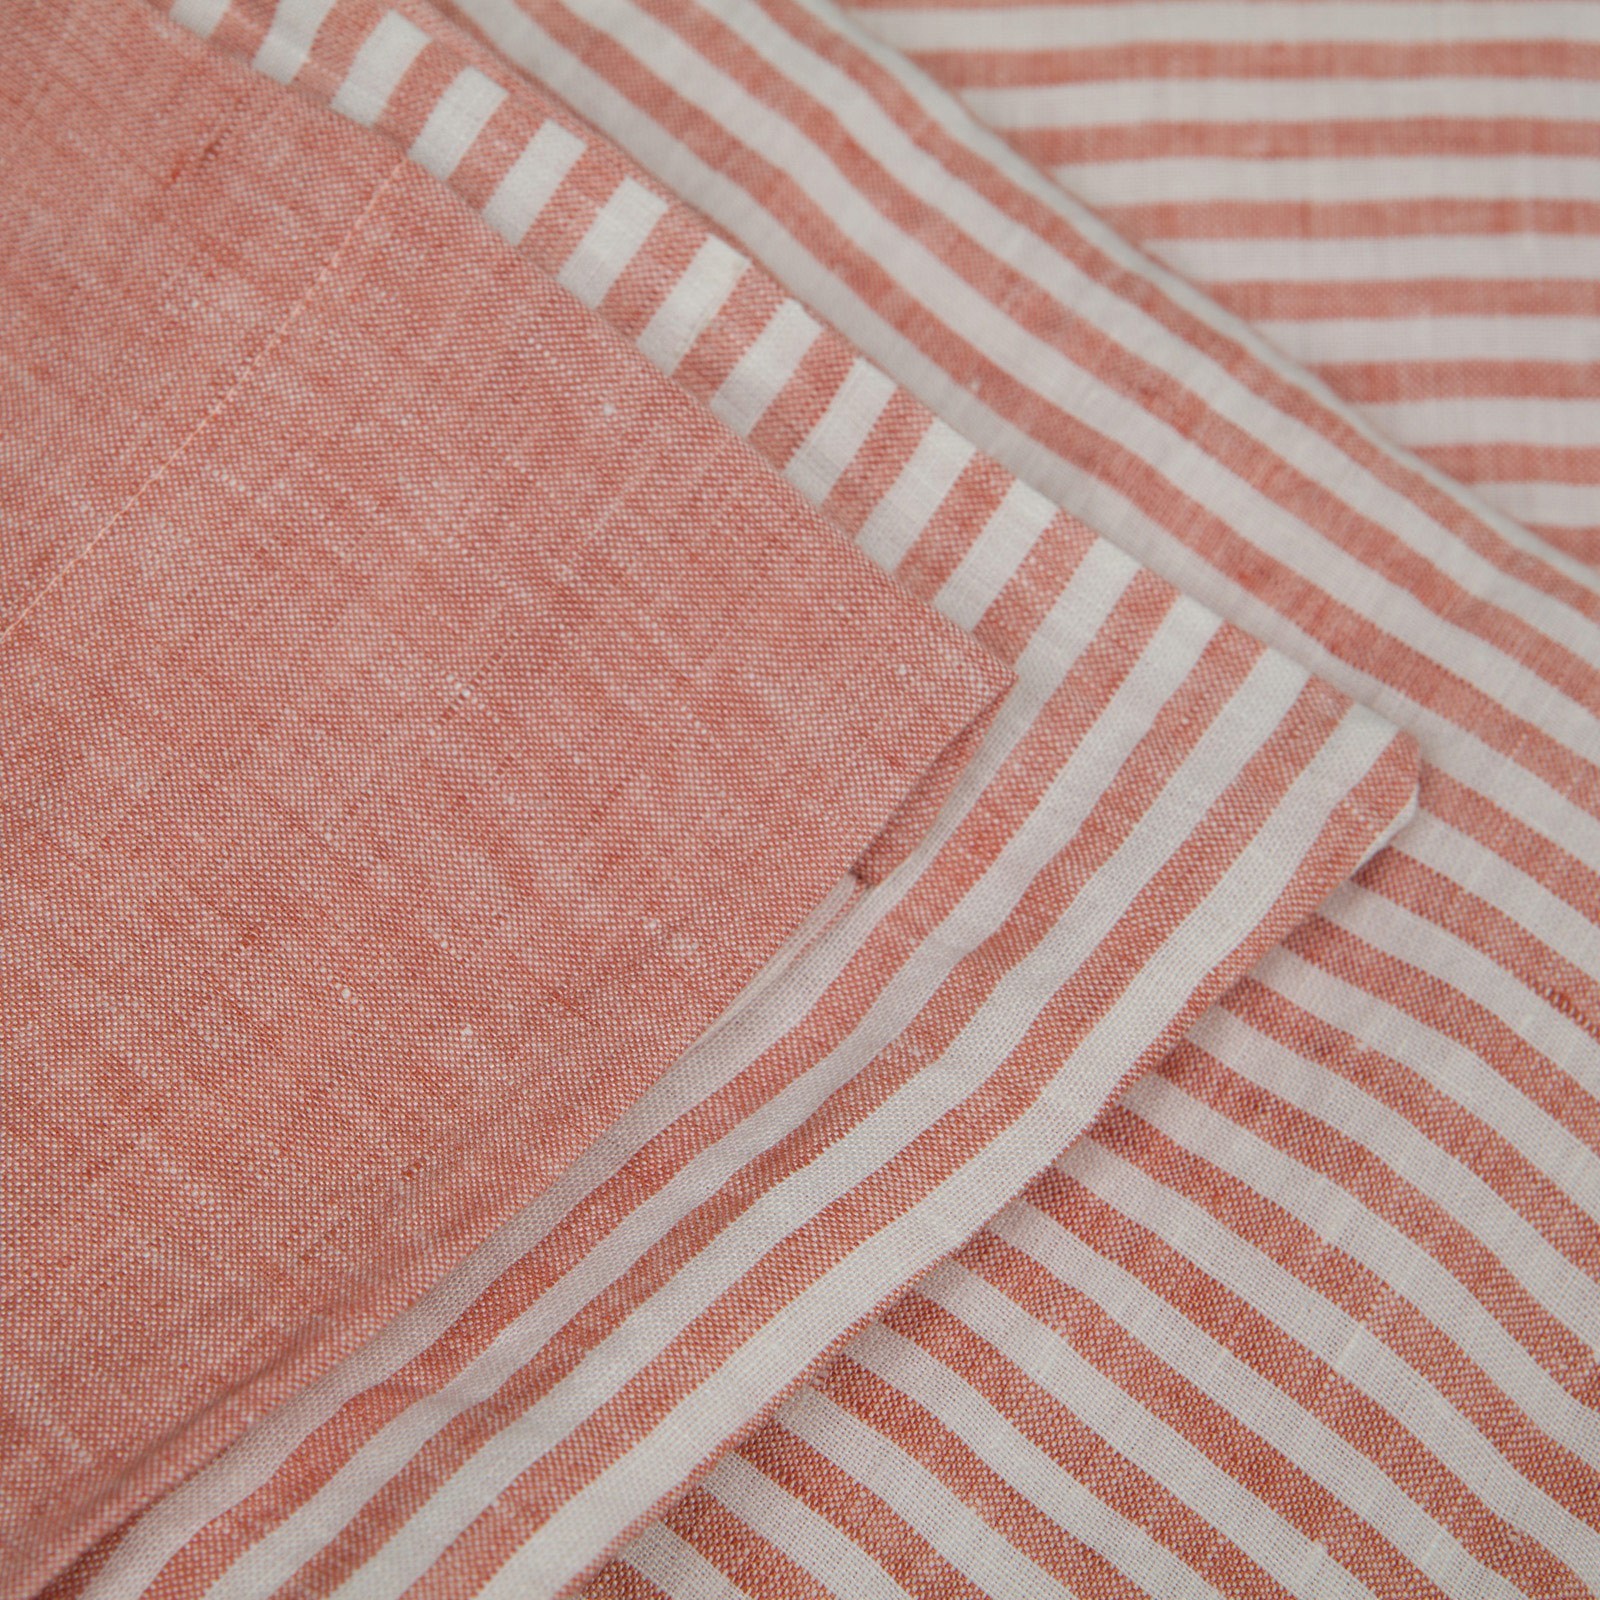 Double Bed Linen Striped Sheet Parure Vintage Mazzoni Casa